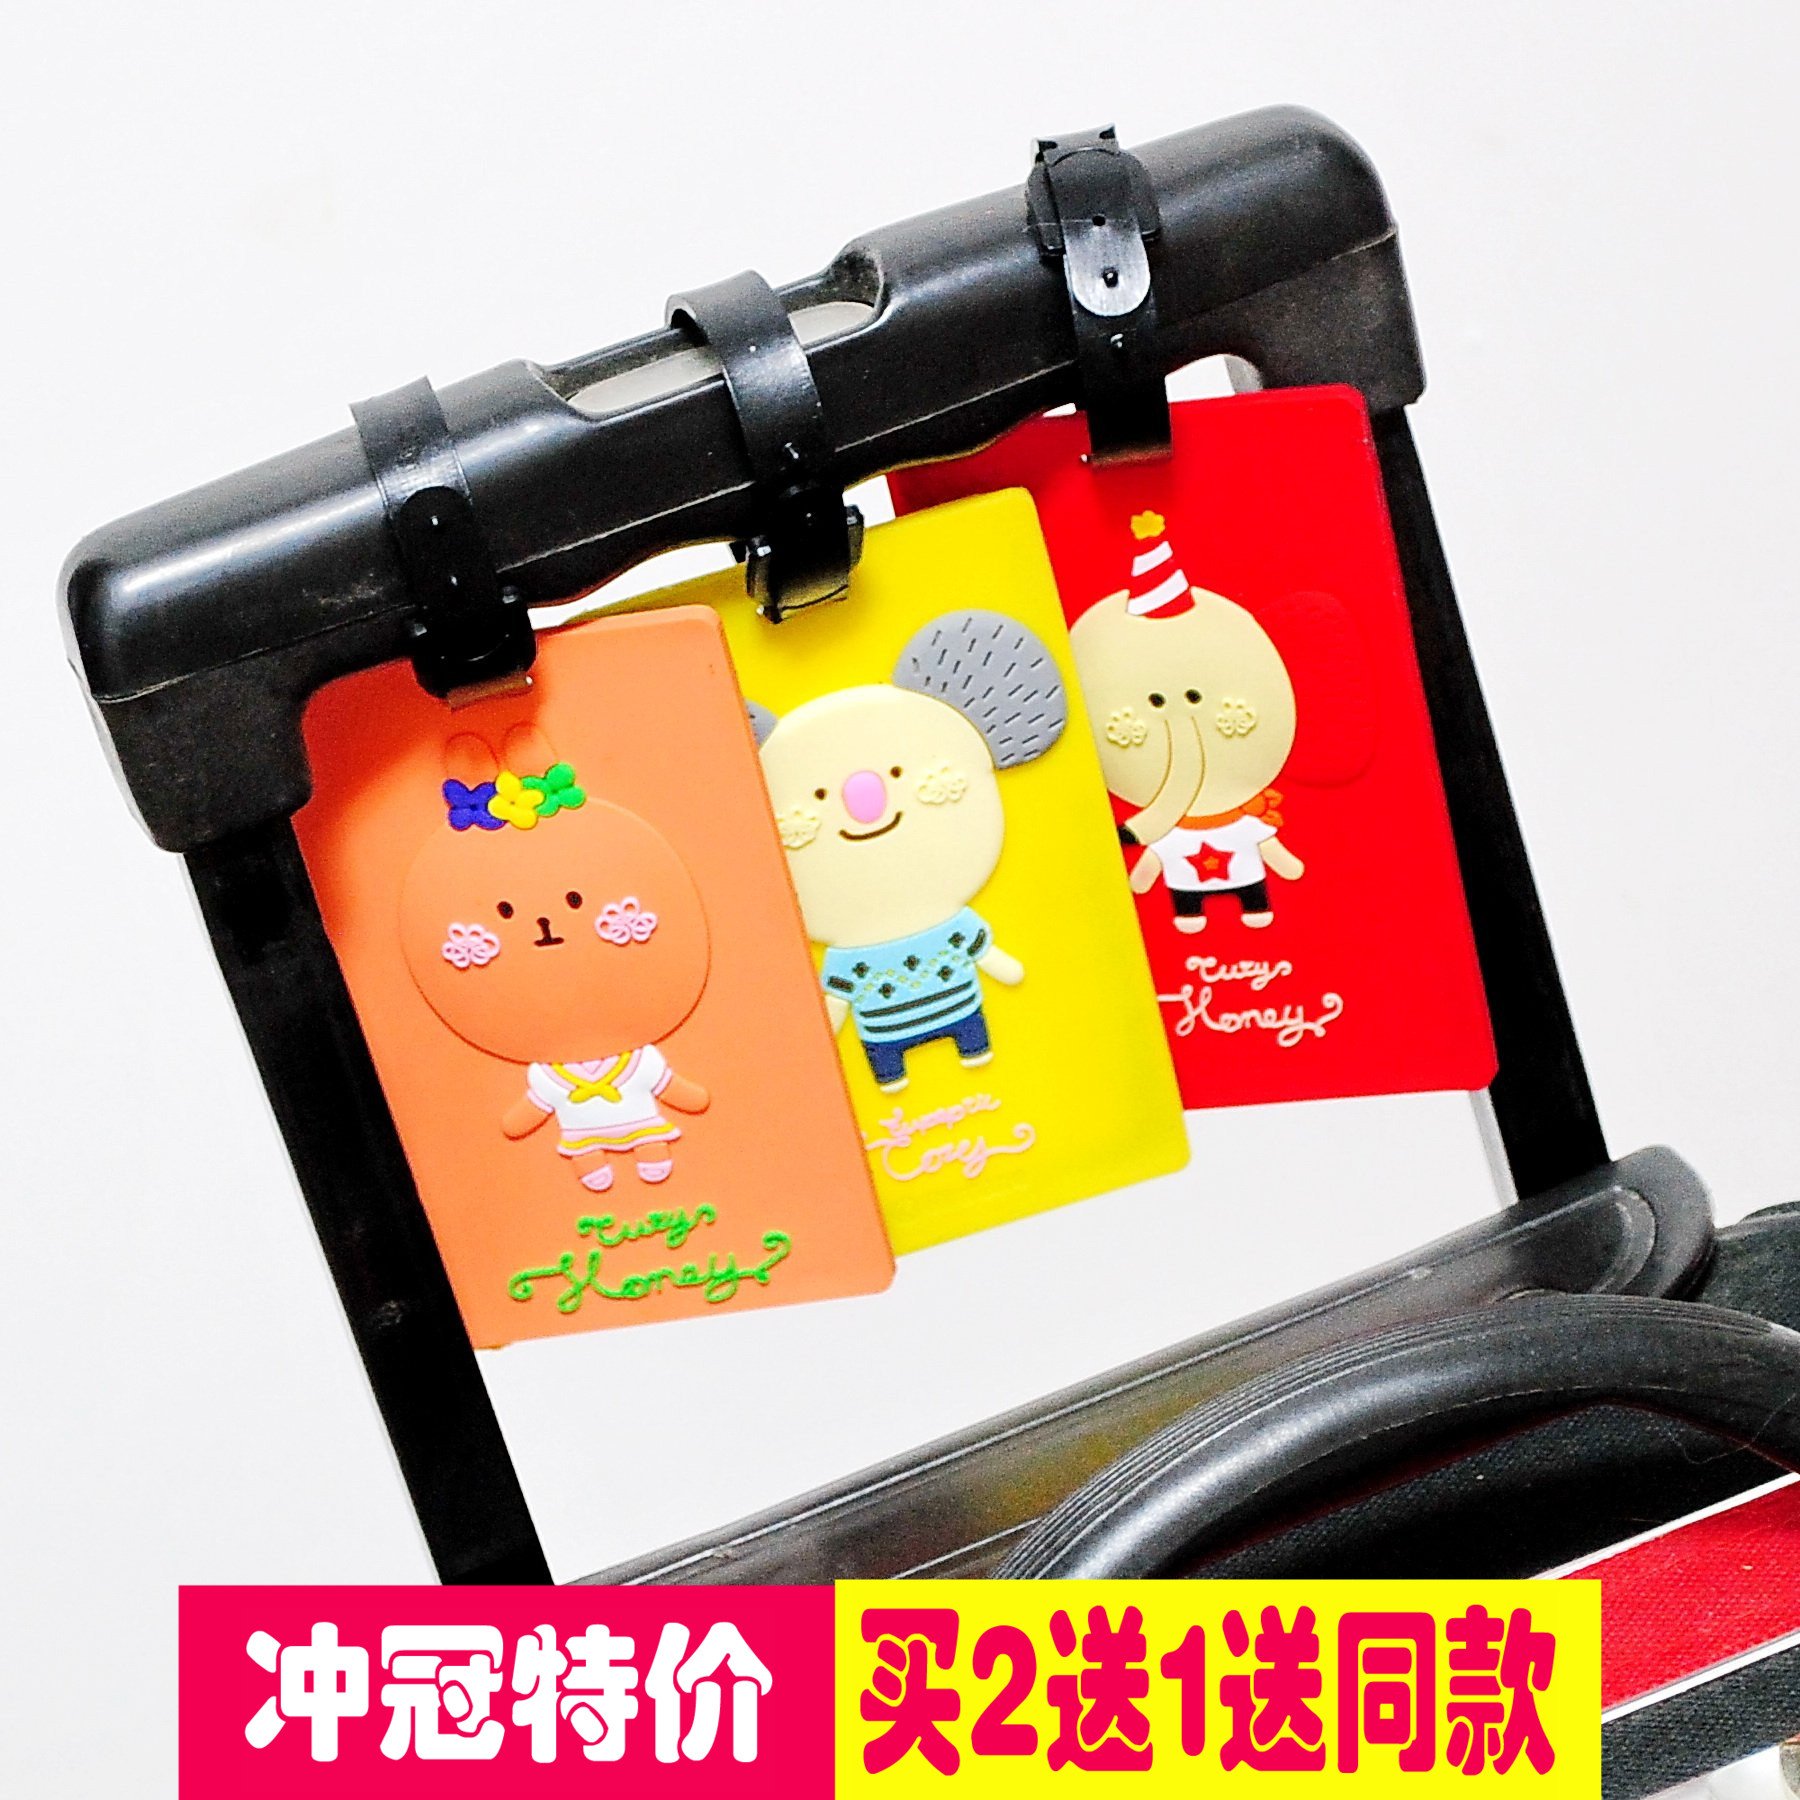 罗马尼系列韩版立体公交卡套/行李牌折扣优惠信息